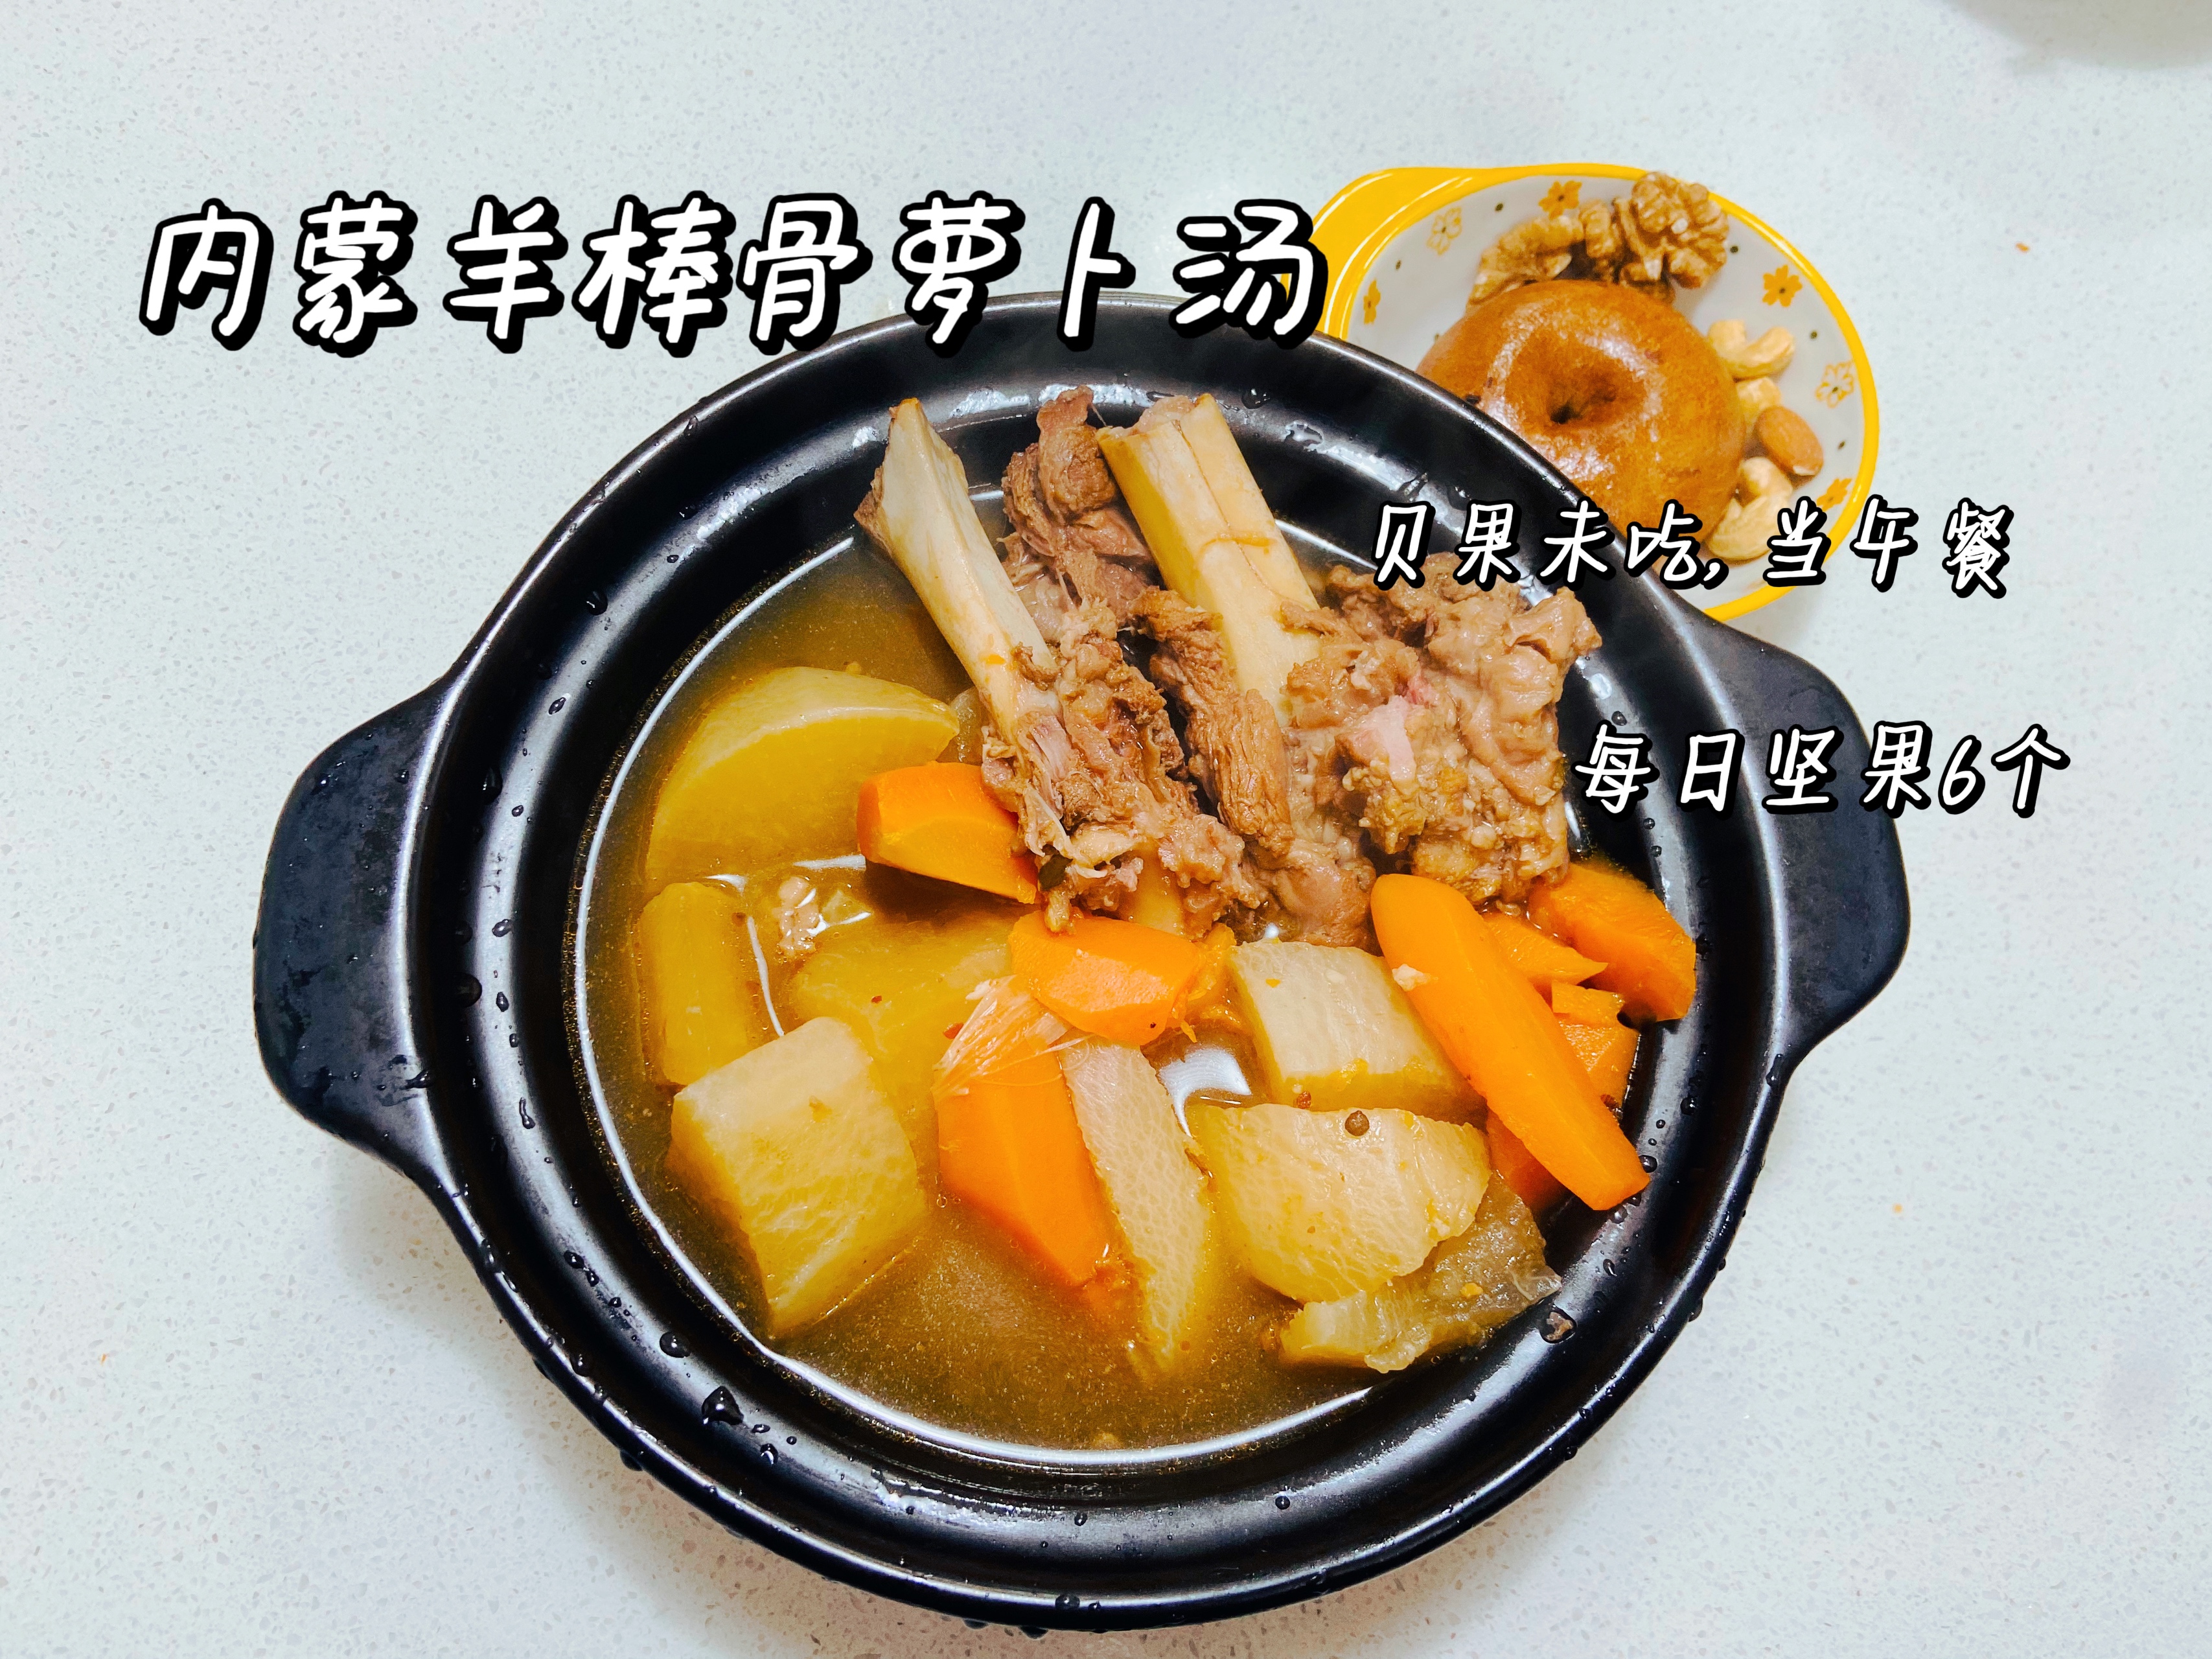 羊棒骨萝卜砂锅汤的做法